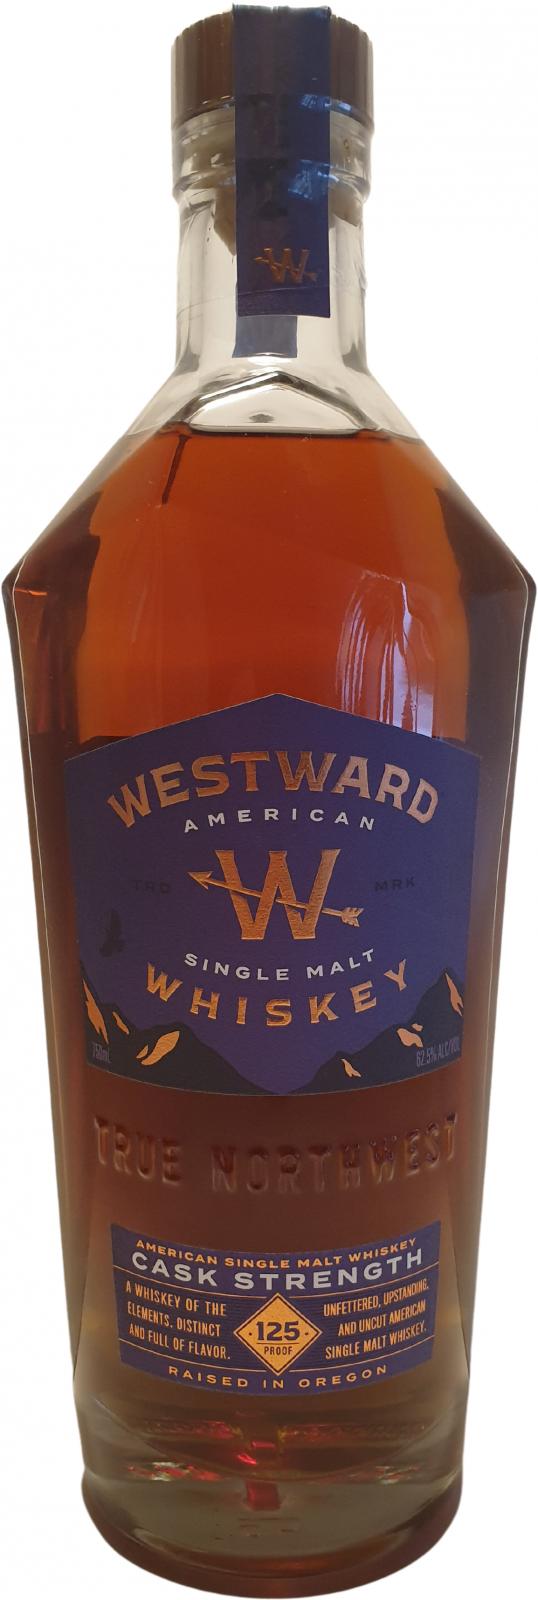 Westward Cask Strength True North West 125 Proof American Single Malt Whiskey